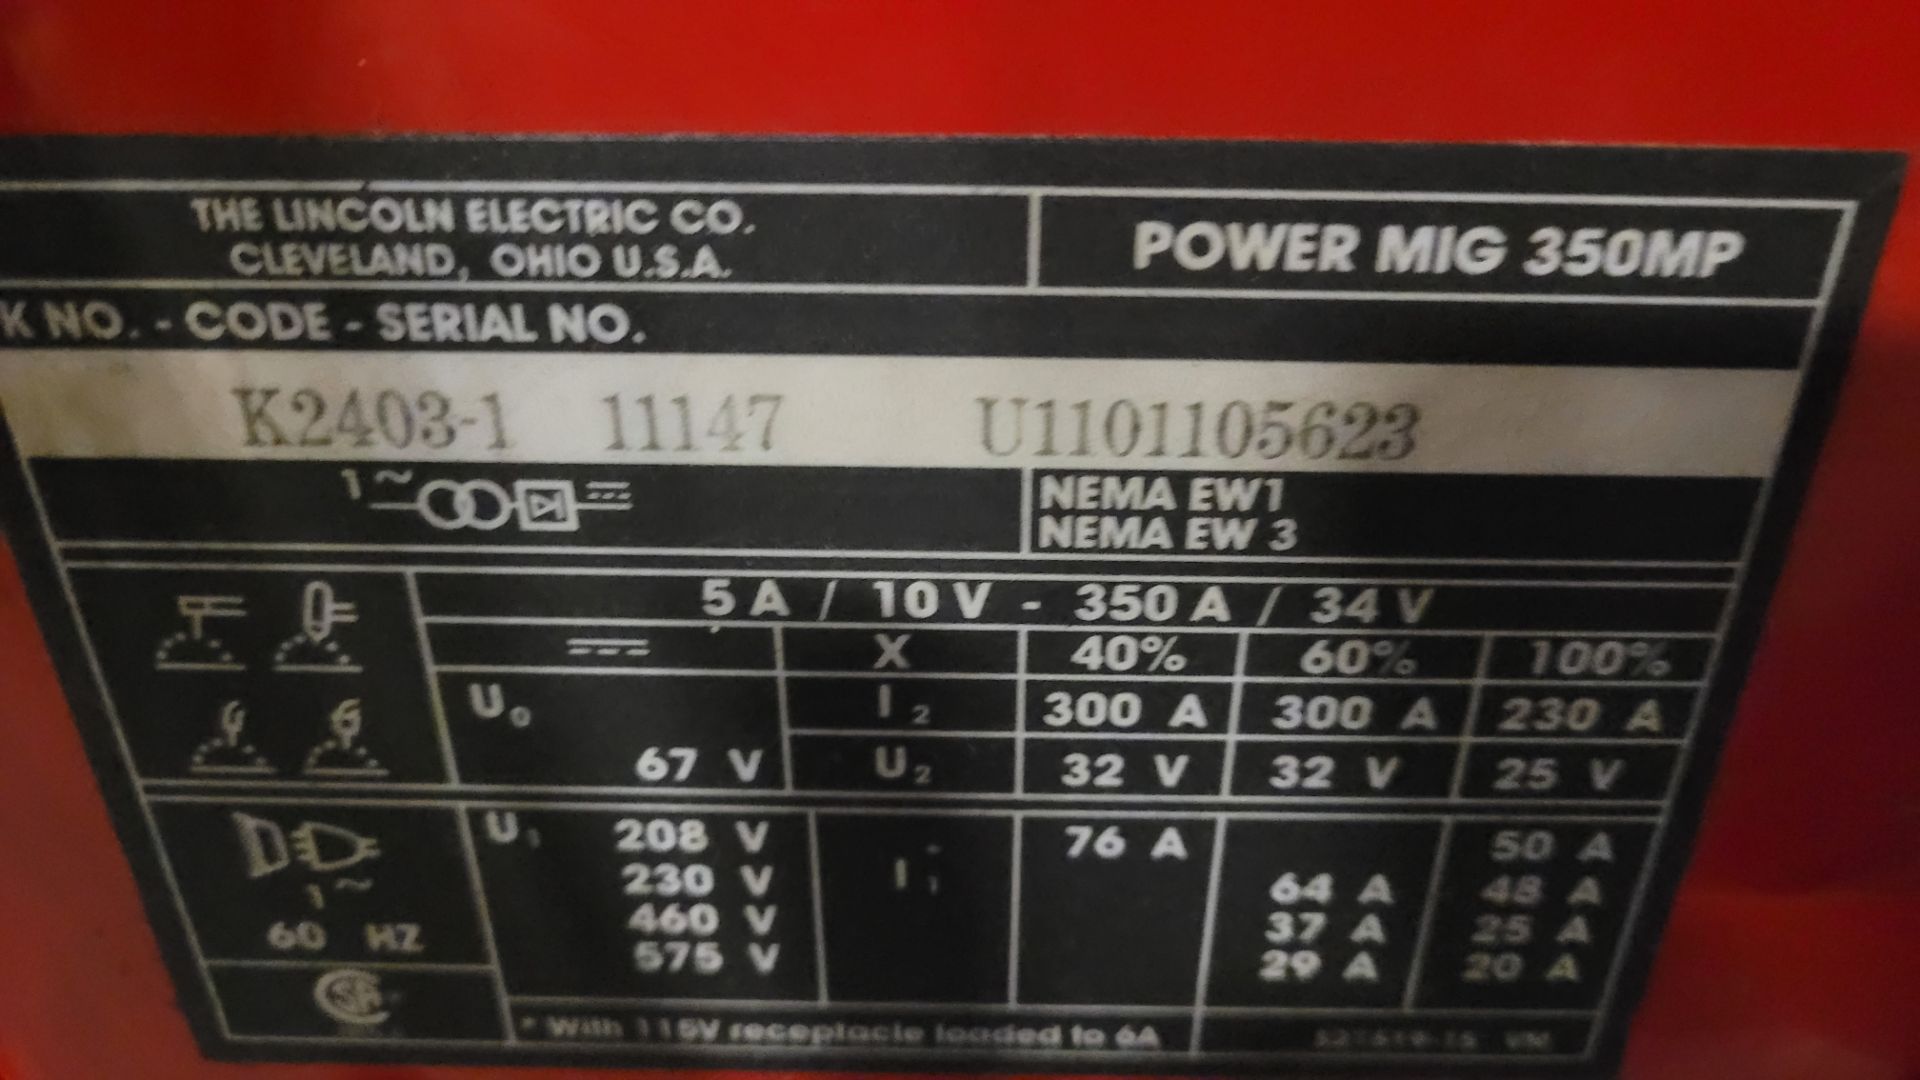 LINCOLN ELECTRIC 350 MP POWER MIG WELDER, CODE K2403-1 11147, S/N U1101105623 - Bild 3 aus 3